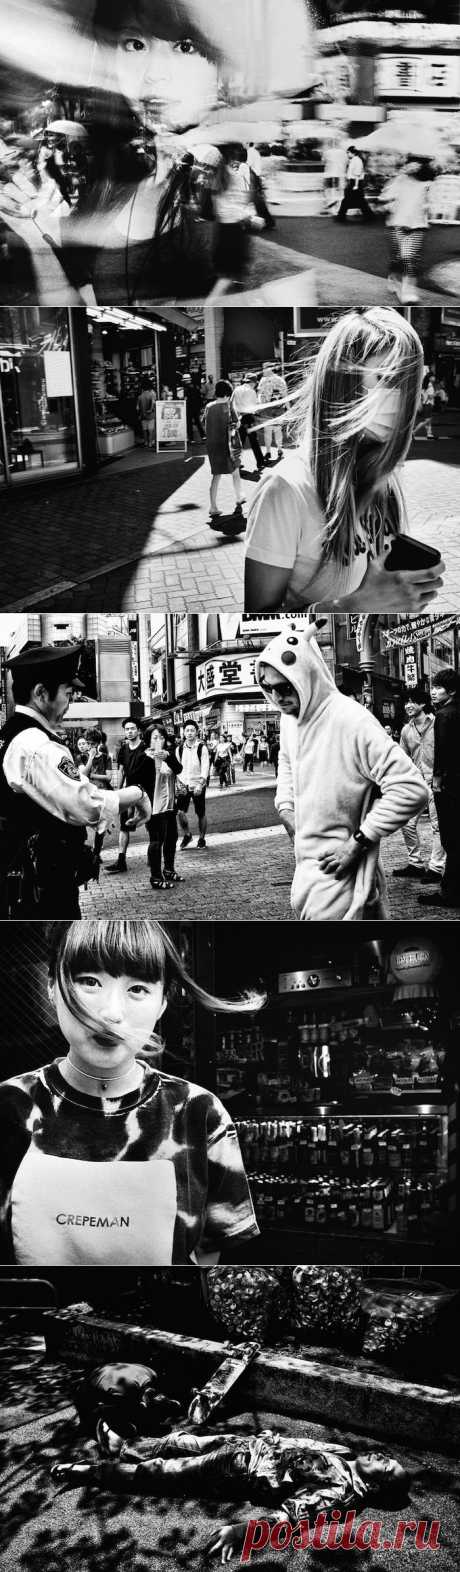 Жизнь бурлит на улицах Токио: цикл документальных черно-белых фотографий | Фотография | Фотография